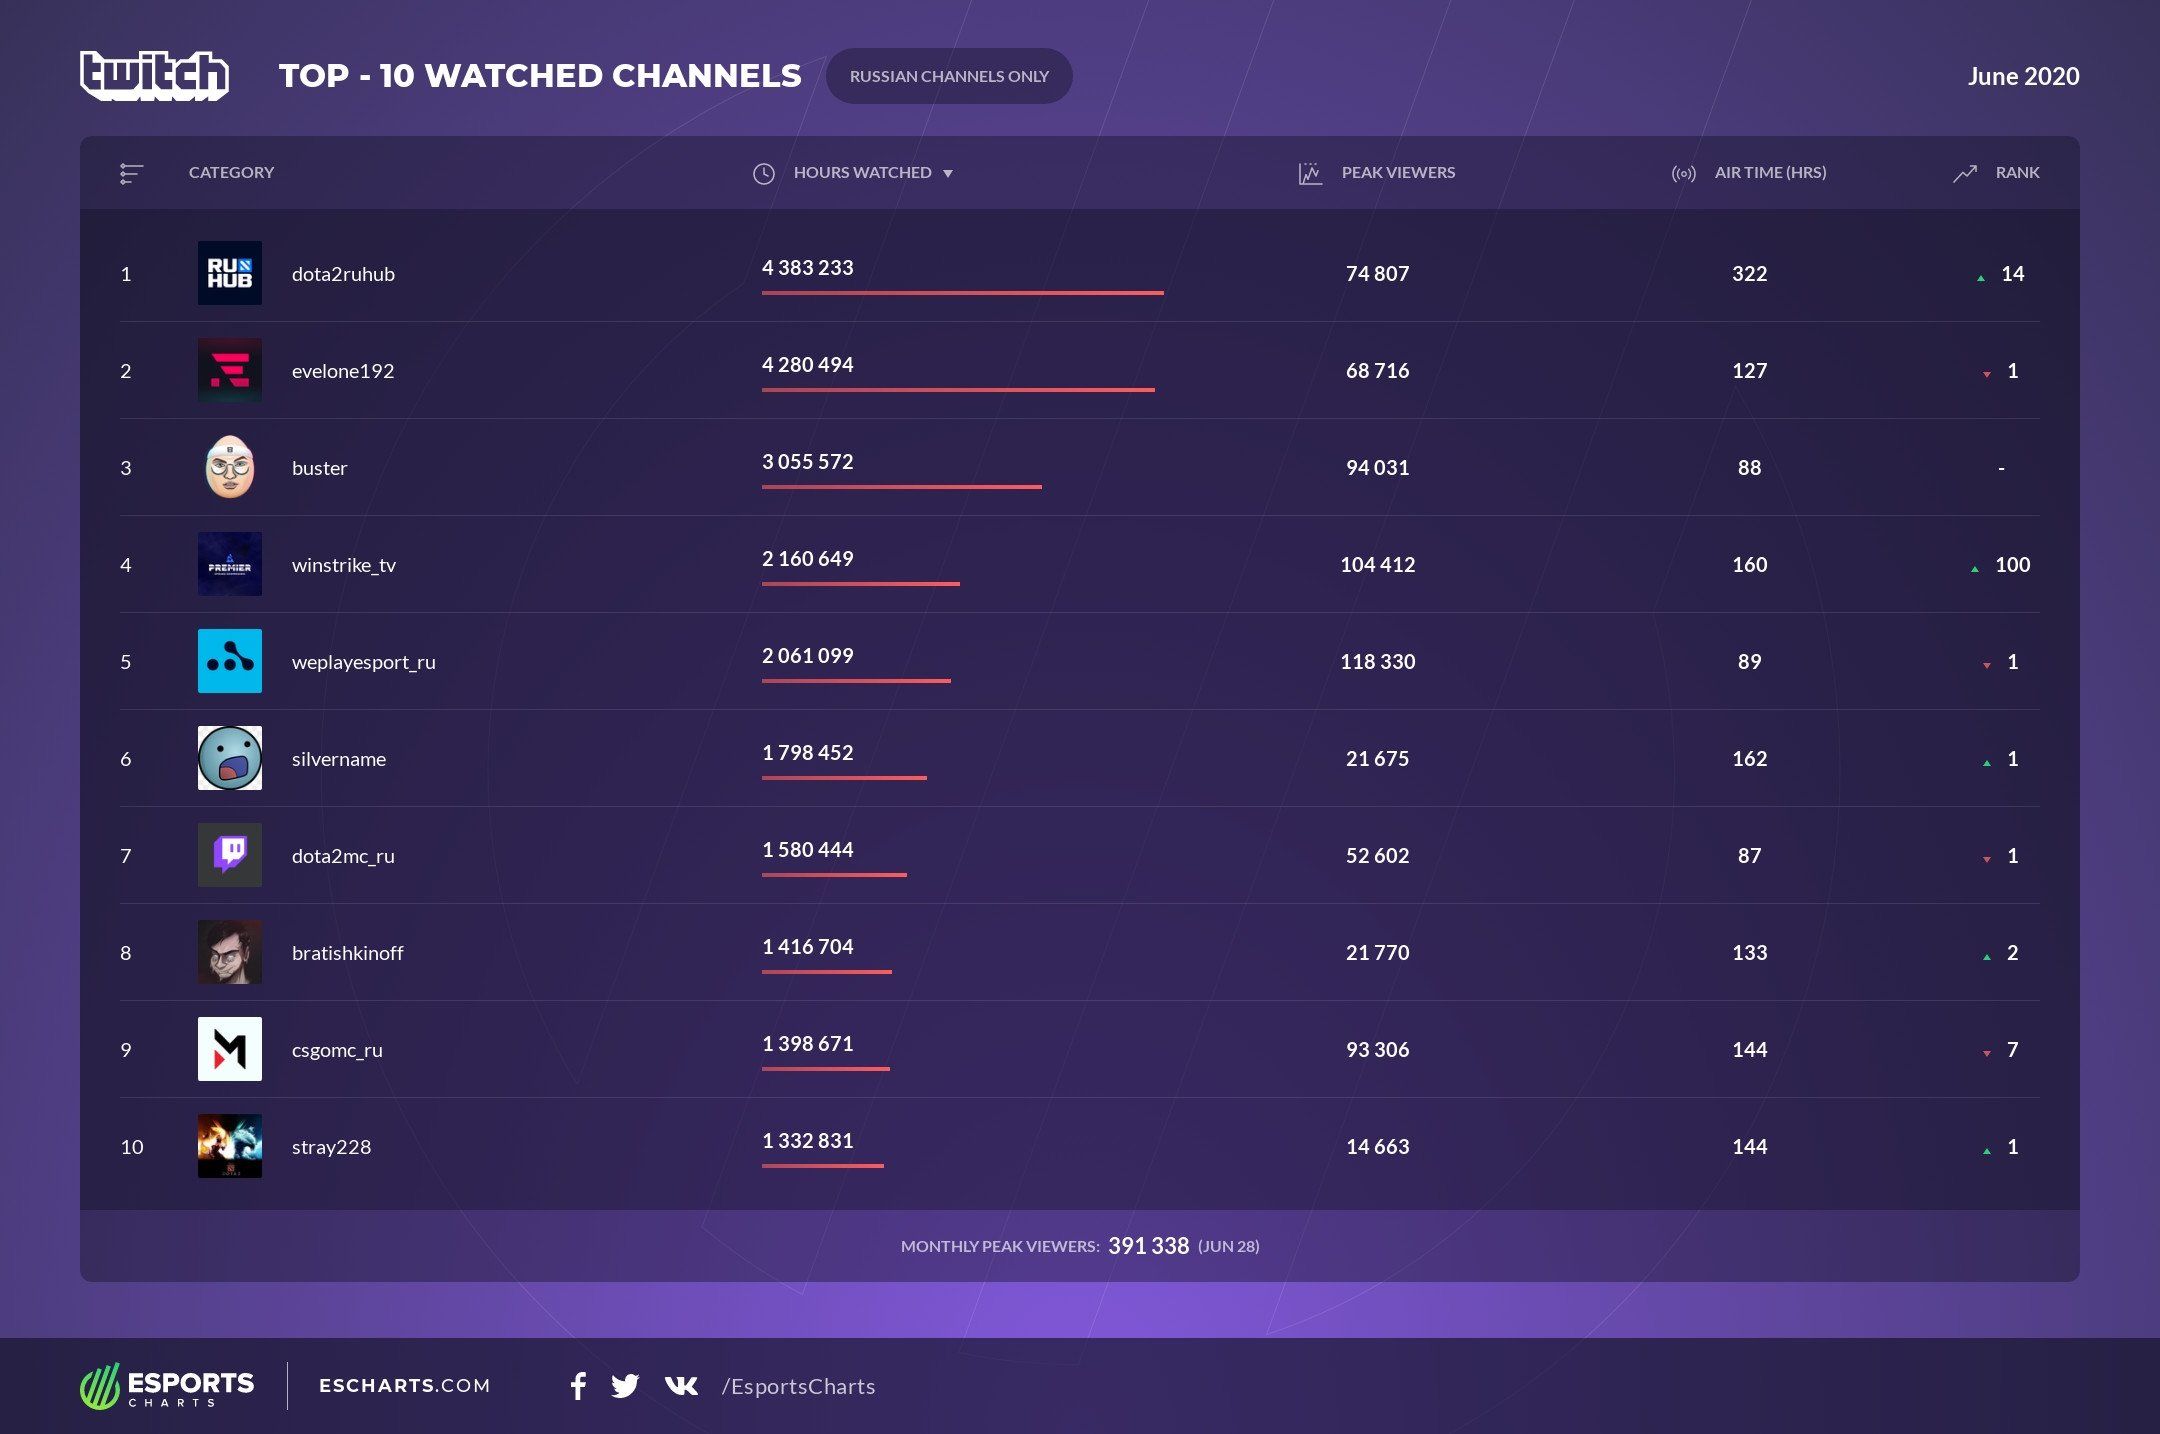 Рейтинг самых просматриваемых русскоязычных каналов на Twitch за июнь.
Источник: Esports Charts